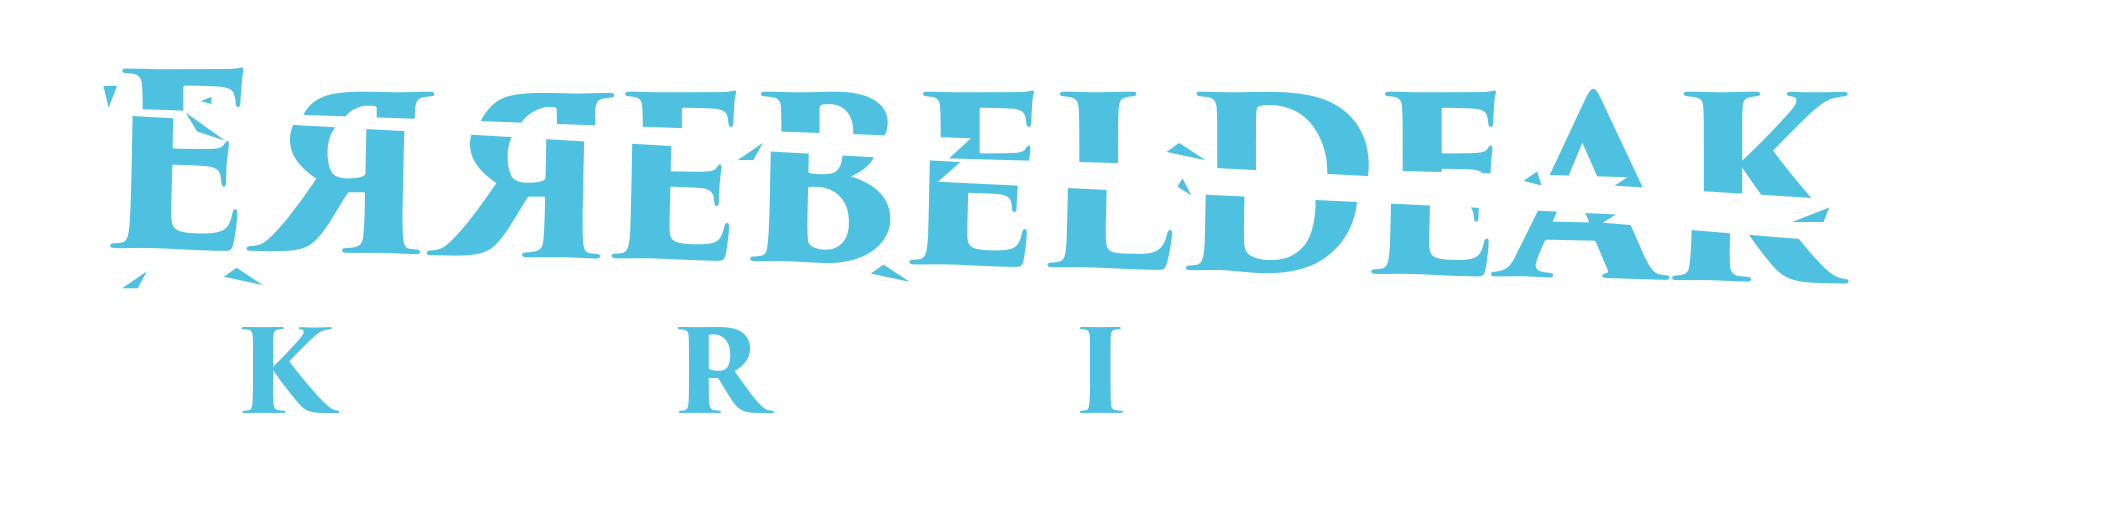 Logo ErrebeldeakFest